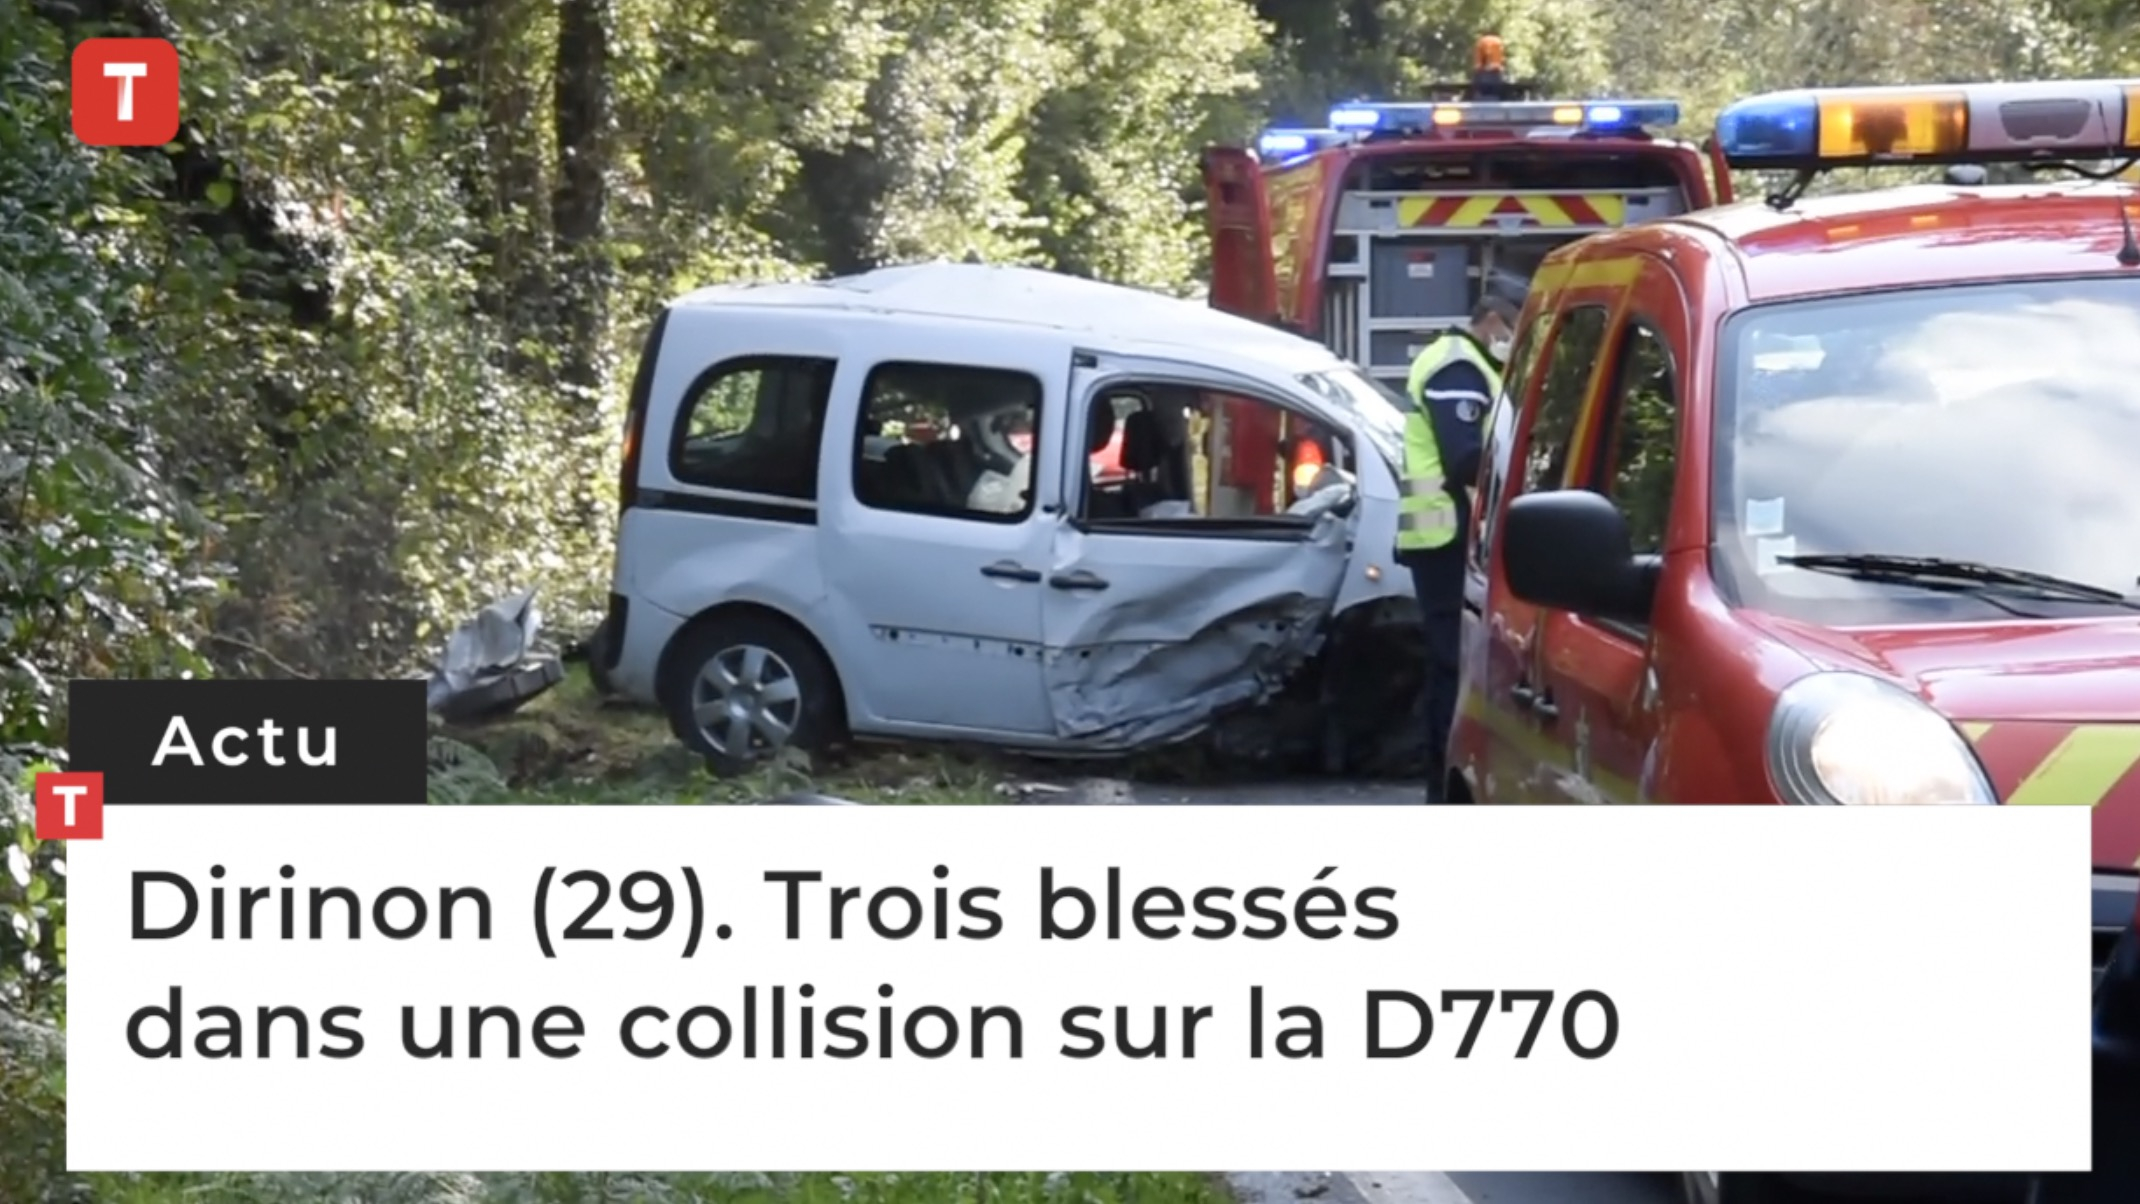  Dirinon (29). Accident : deux véhicules impliqués, la route bloquée (Le Télégramme)